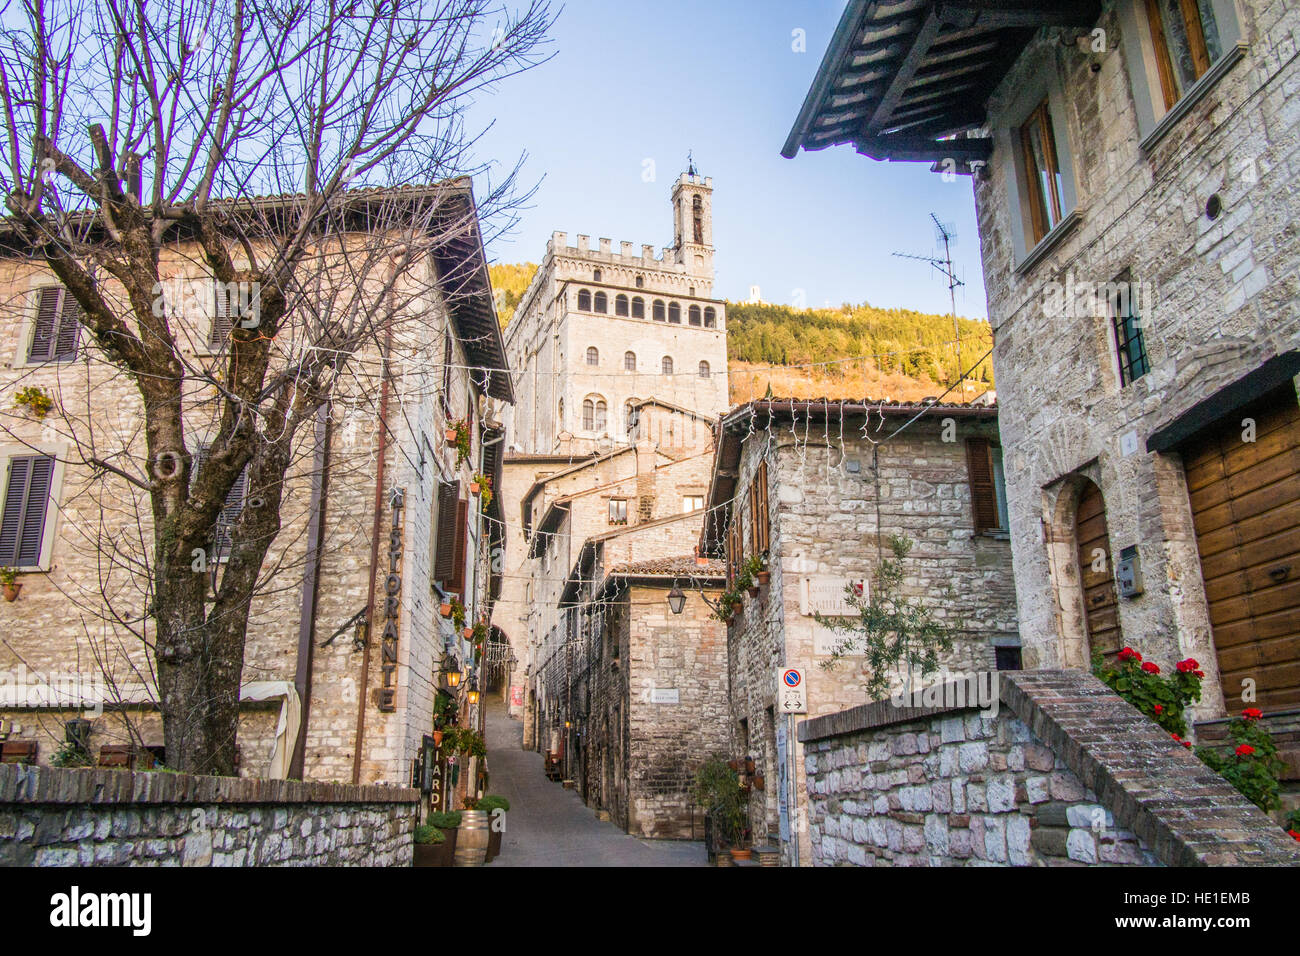 La ville médiévale de Gubbio dans la province de Pérouse, Ombrie, Italie. Banque D'Images